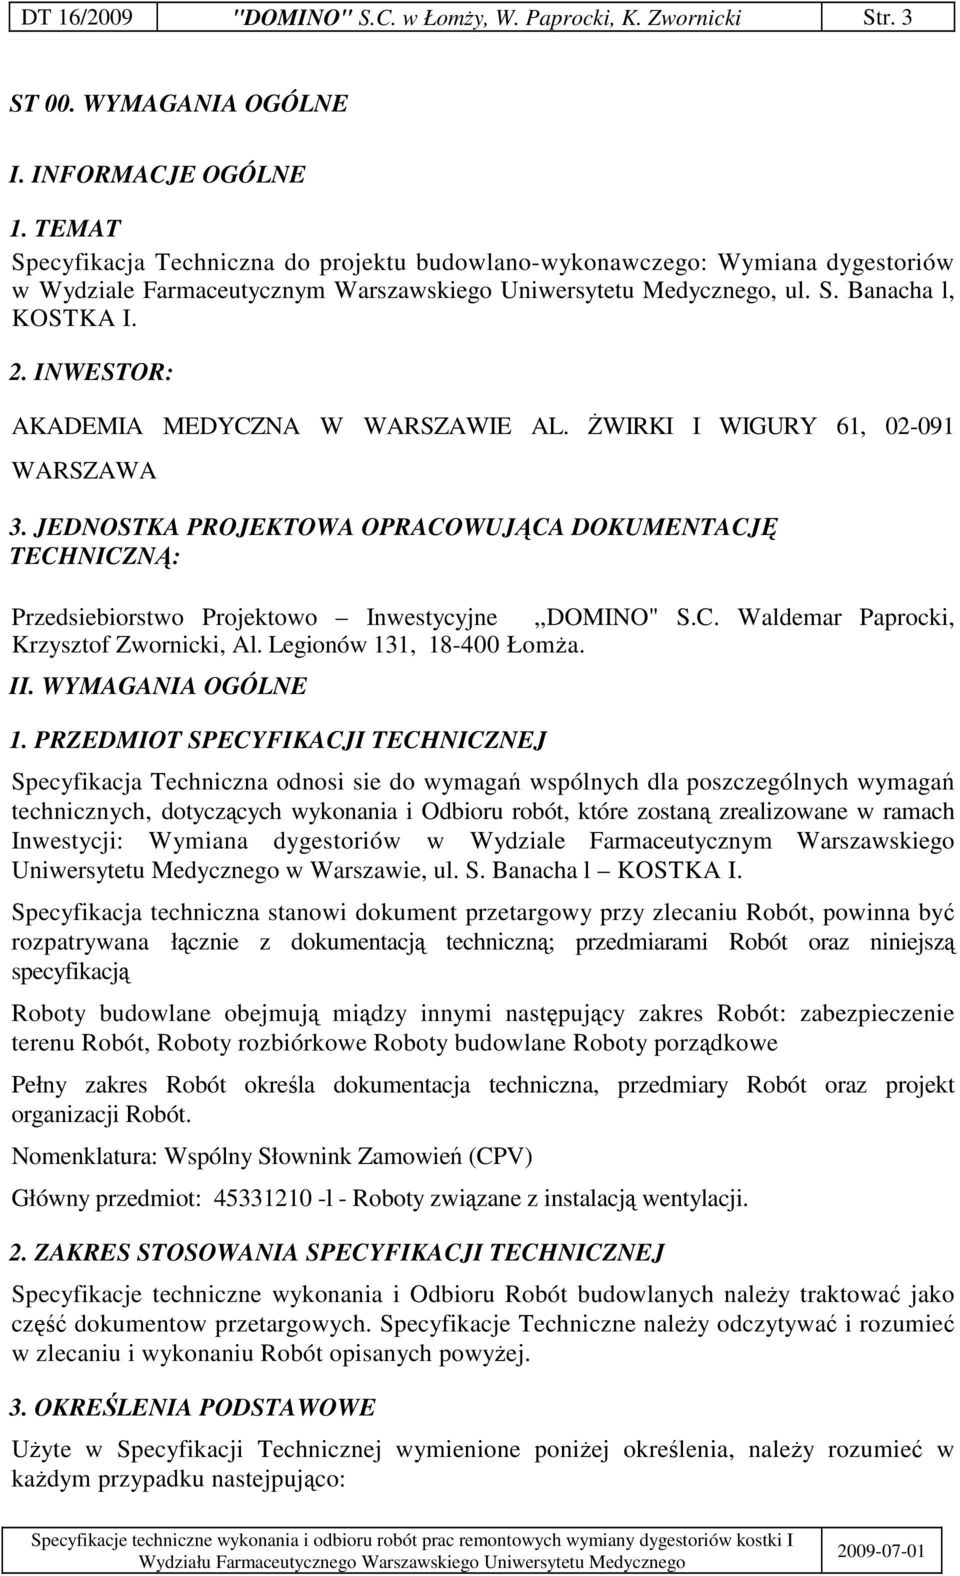 INWESTOR: AKADEMIA MEDYCZNA W WARSZAWIE AL. WIRKI I WIGURY 61, 02-091 WARSZAWA 3. JEDNOSTKA PROJEKTOWA OPRACOWUJCA DOKUMENTACJ TECHNICZN: Przedsiebiorstwo Projektowo Inwestycyjne,,DOMINO" S.C. Waldemar Paprocki, Krzysztof Zwornicki, Al.